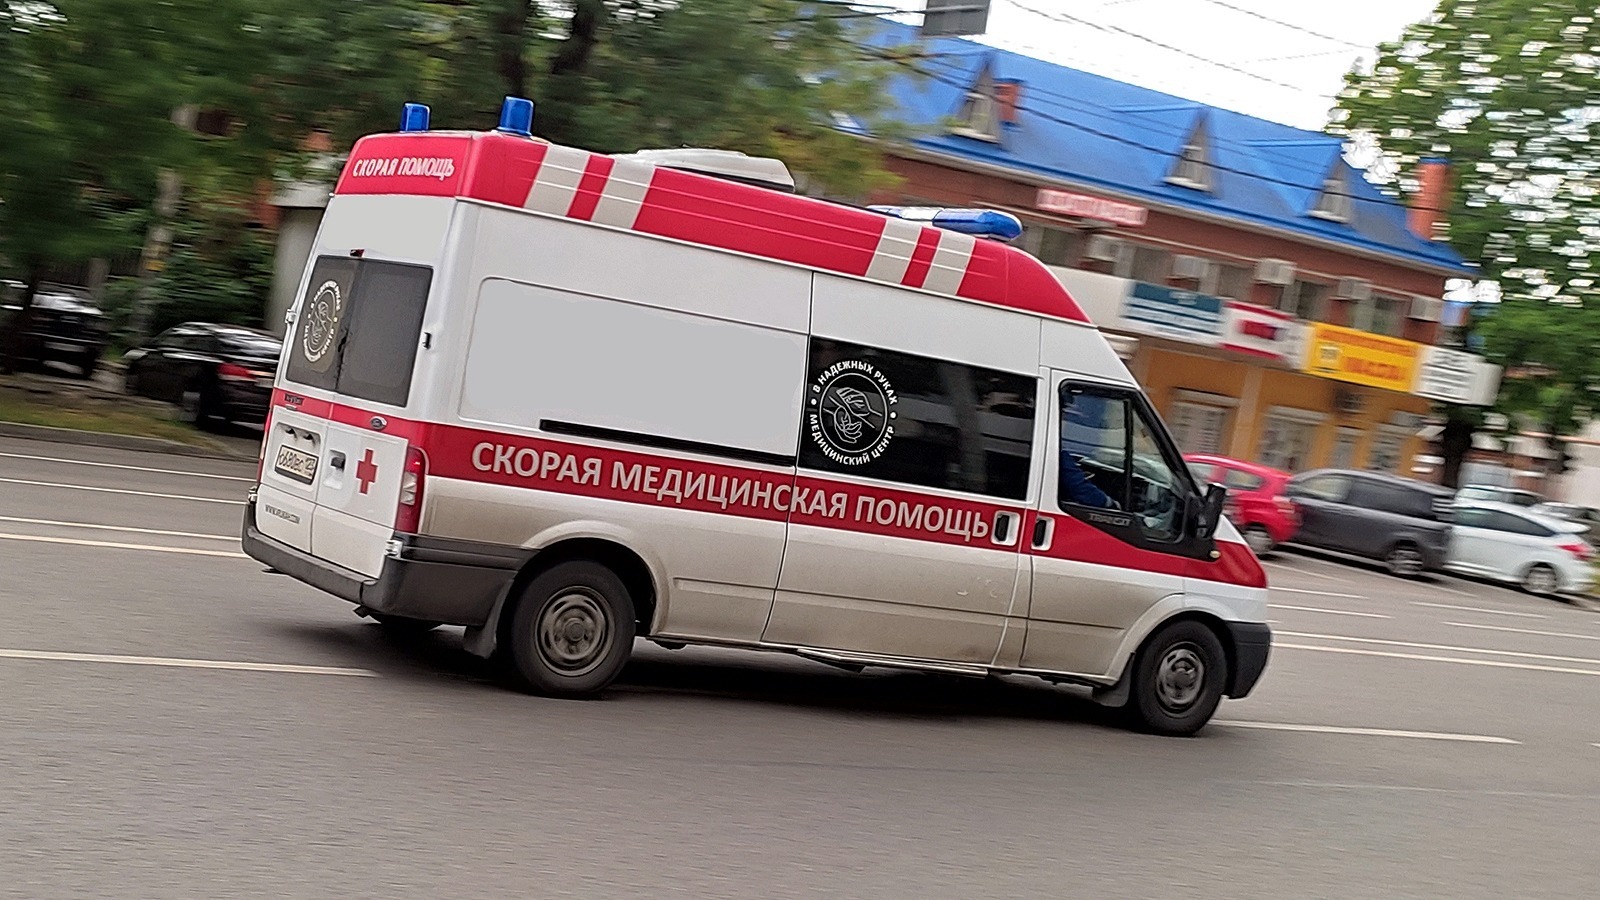 В Ульяновске сработала сигнализация в школе, и три ученика выпрыгнули из окна